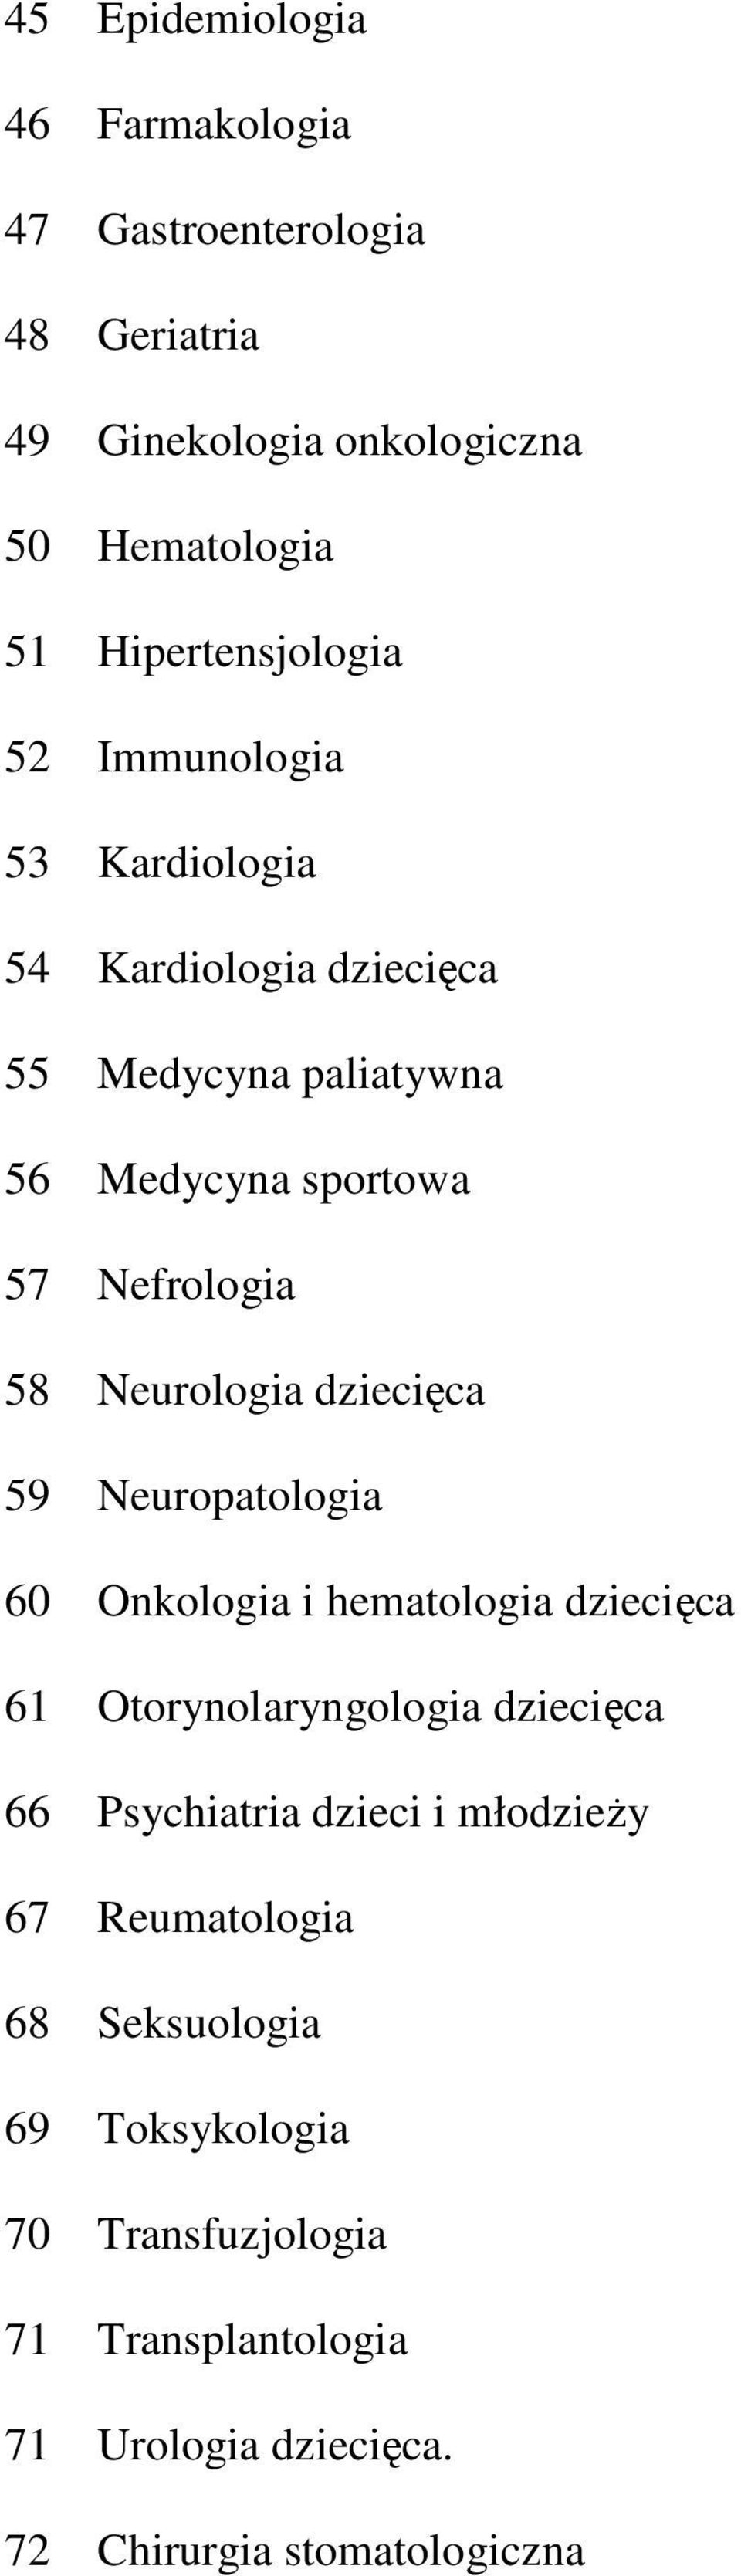 dziecięca 59 Neuropatologia 60 Onkologia i hematologia dziecięca 61 Otorynolaryngologia dziecięca 66 Psychiatria dzieci i młodzieży